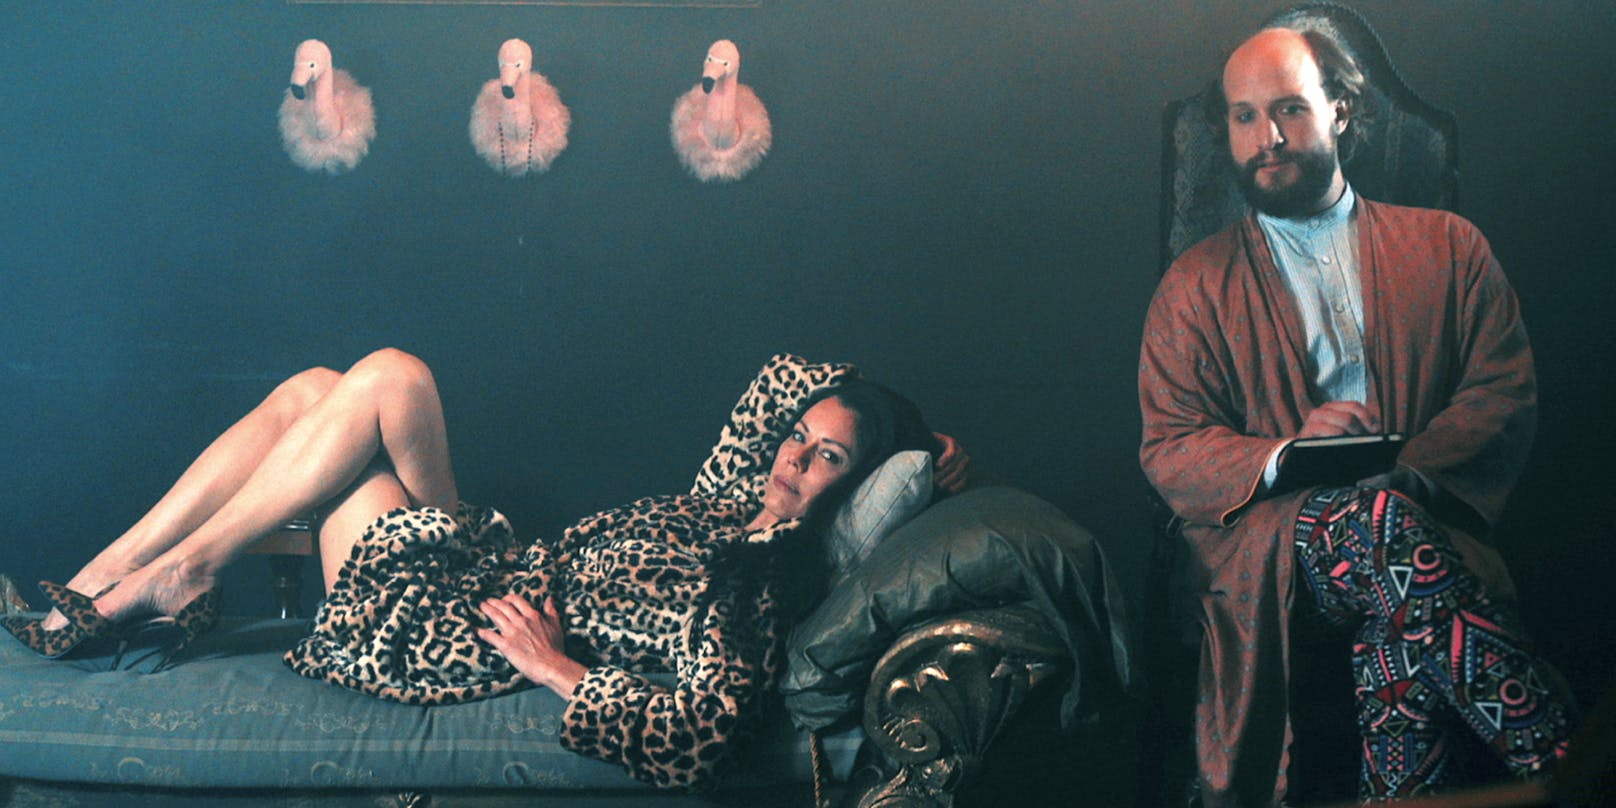 Liener als Sigmund Freud, mit Falco-Ex Caroline Perron auf der Couch